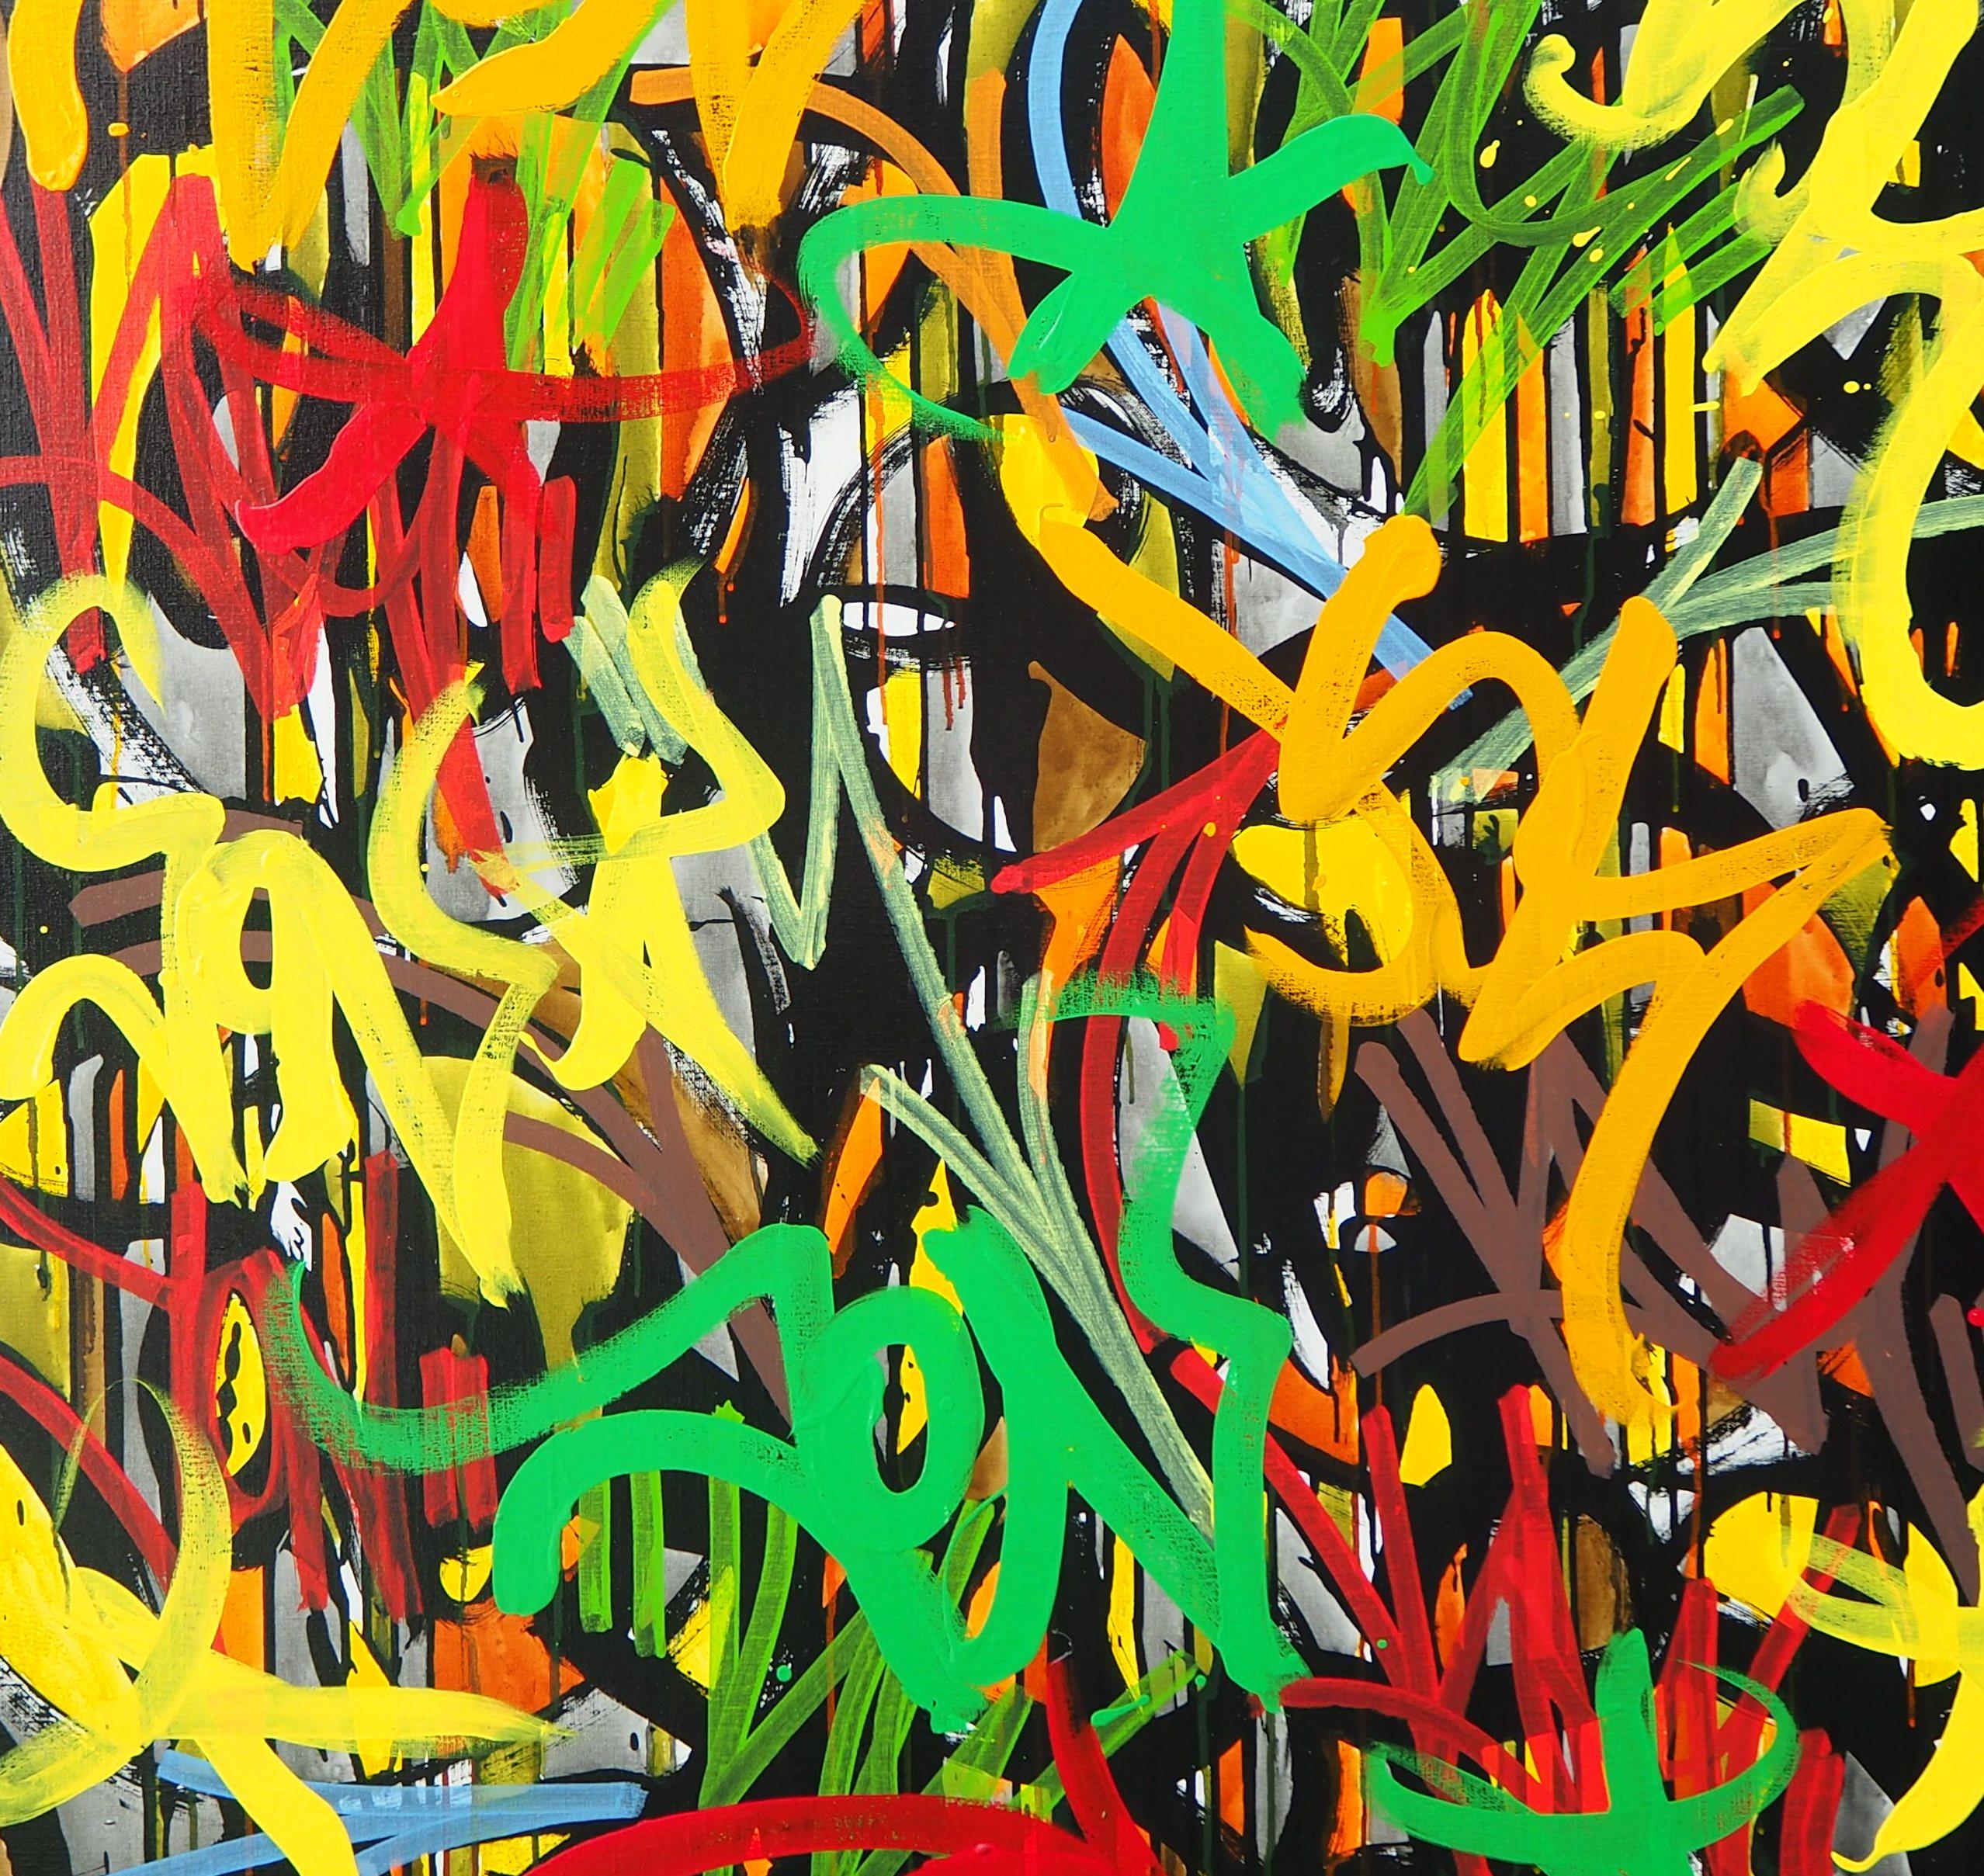 Jonone
Geschichte meines Lebens, 2010

Original Acrylfarbe auf Leinwand
Signiert und betitelt auf der Rückseite
Auf Leinwand 125 x 125 cm (ca. 49 x 49 Zoll)
Präsentiert mit einem schwarzen Holzrahmen 130 x 130 cm (ca. 51 x 51 Zoll)

Mit einem vom